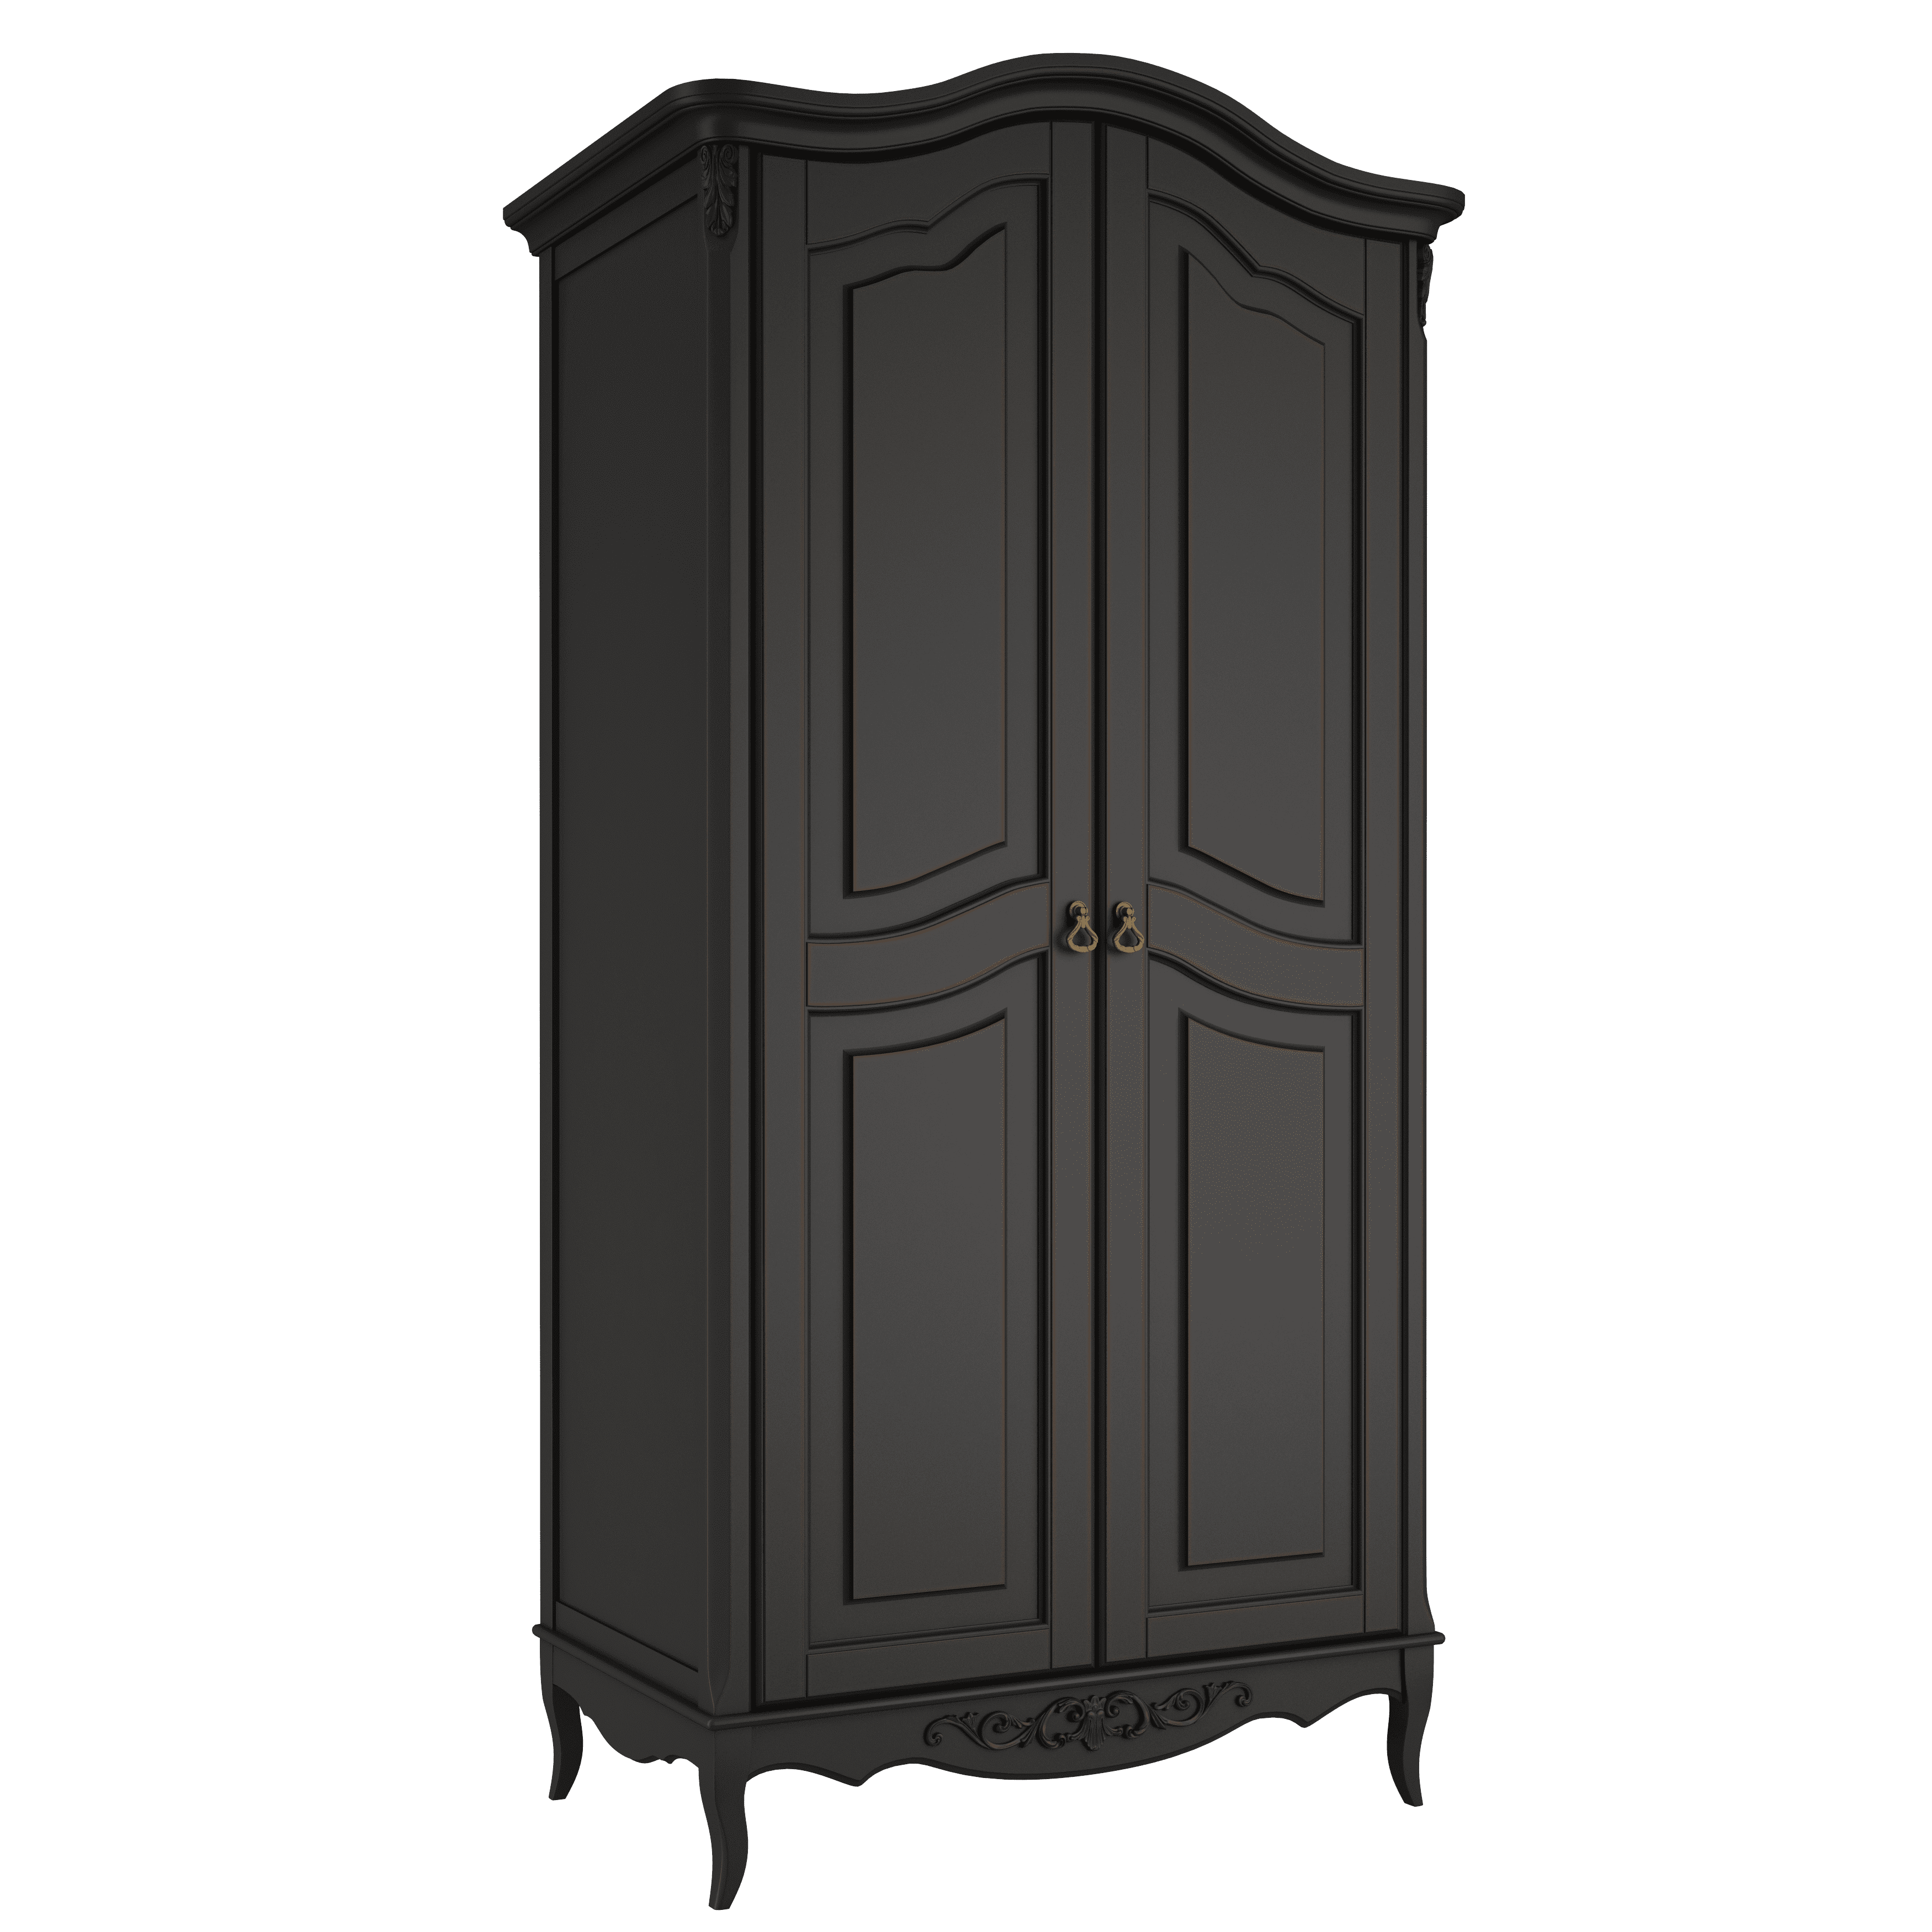 Шкаф платяной Aletan Provence, 2-х дверный, цвет: черный, размер 107х66х210 см (B802BL)B802BL